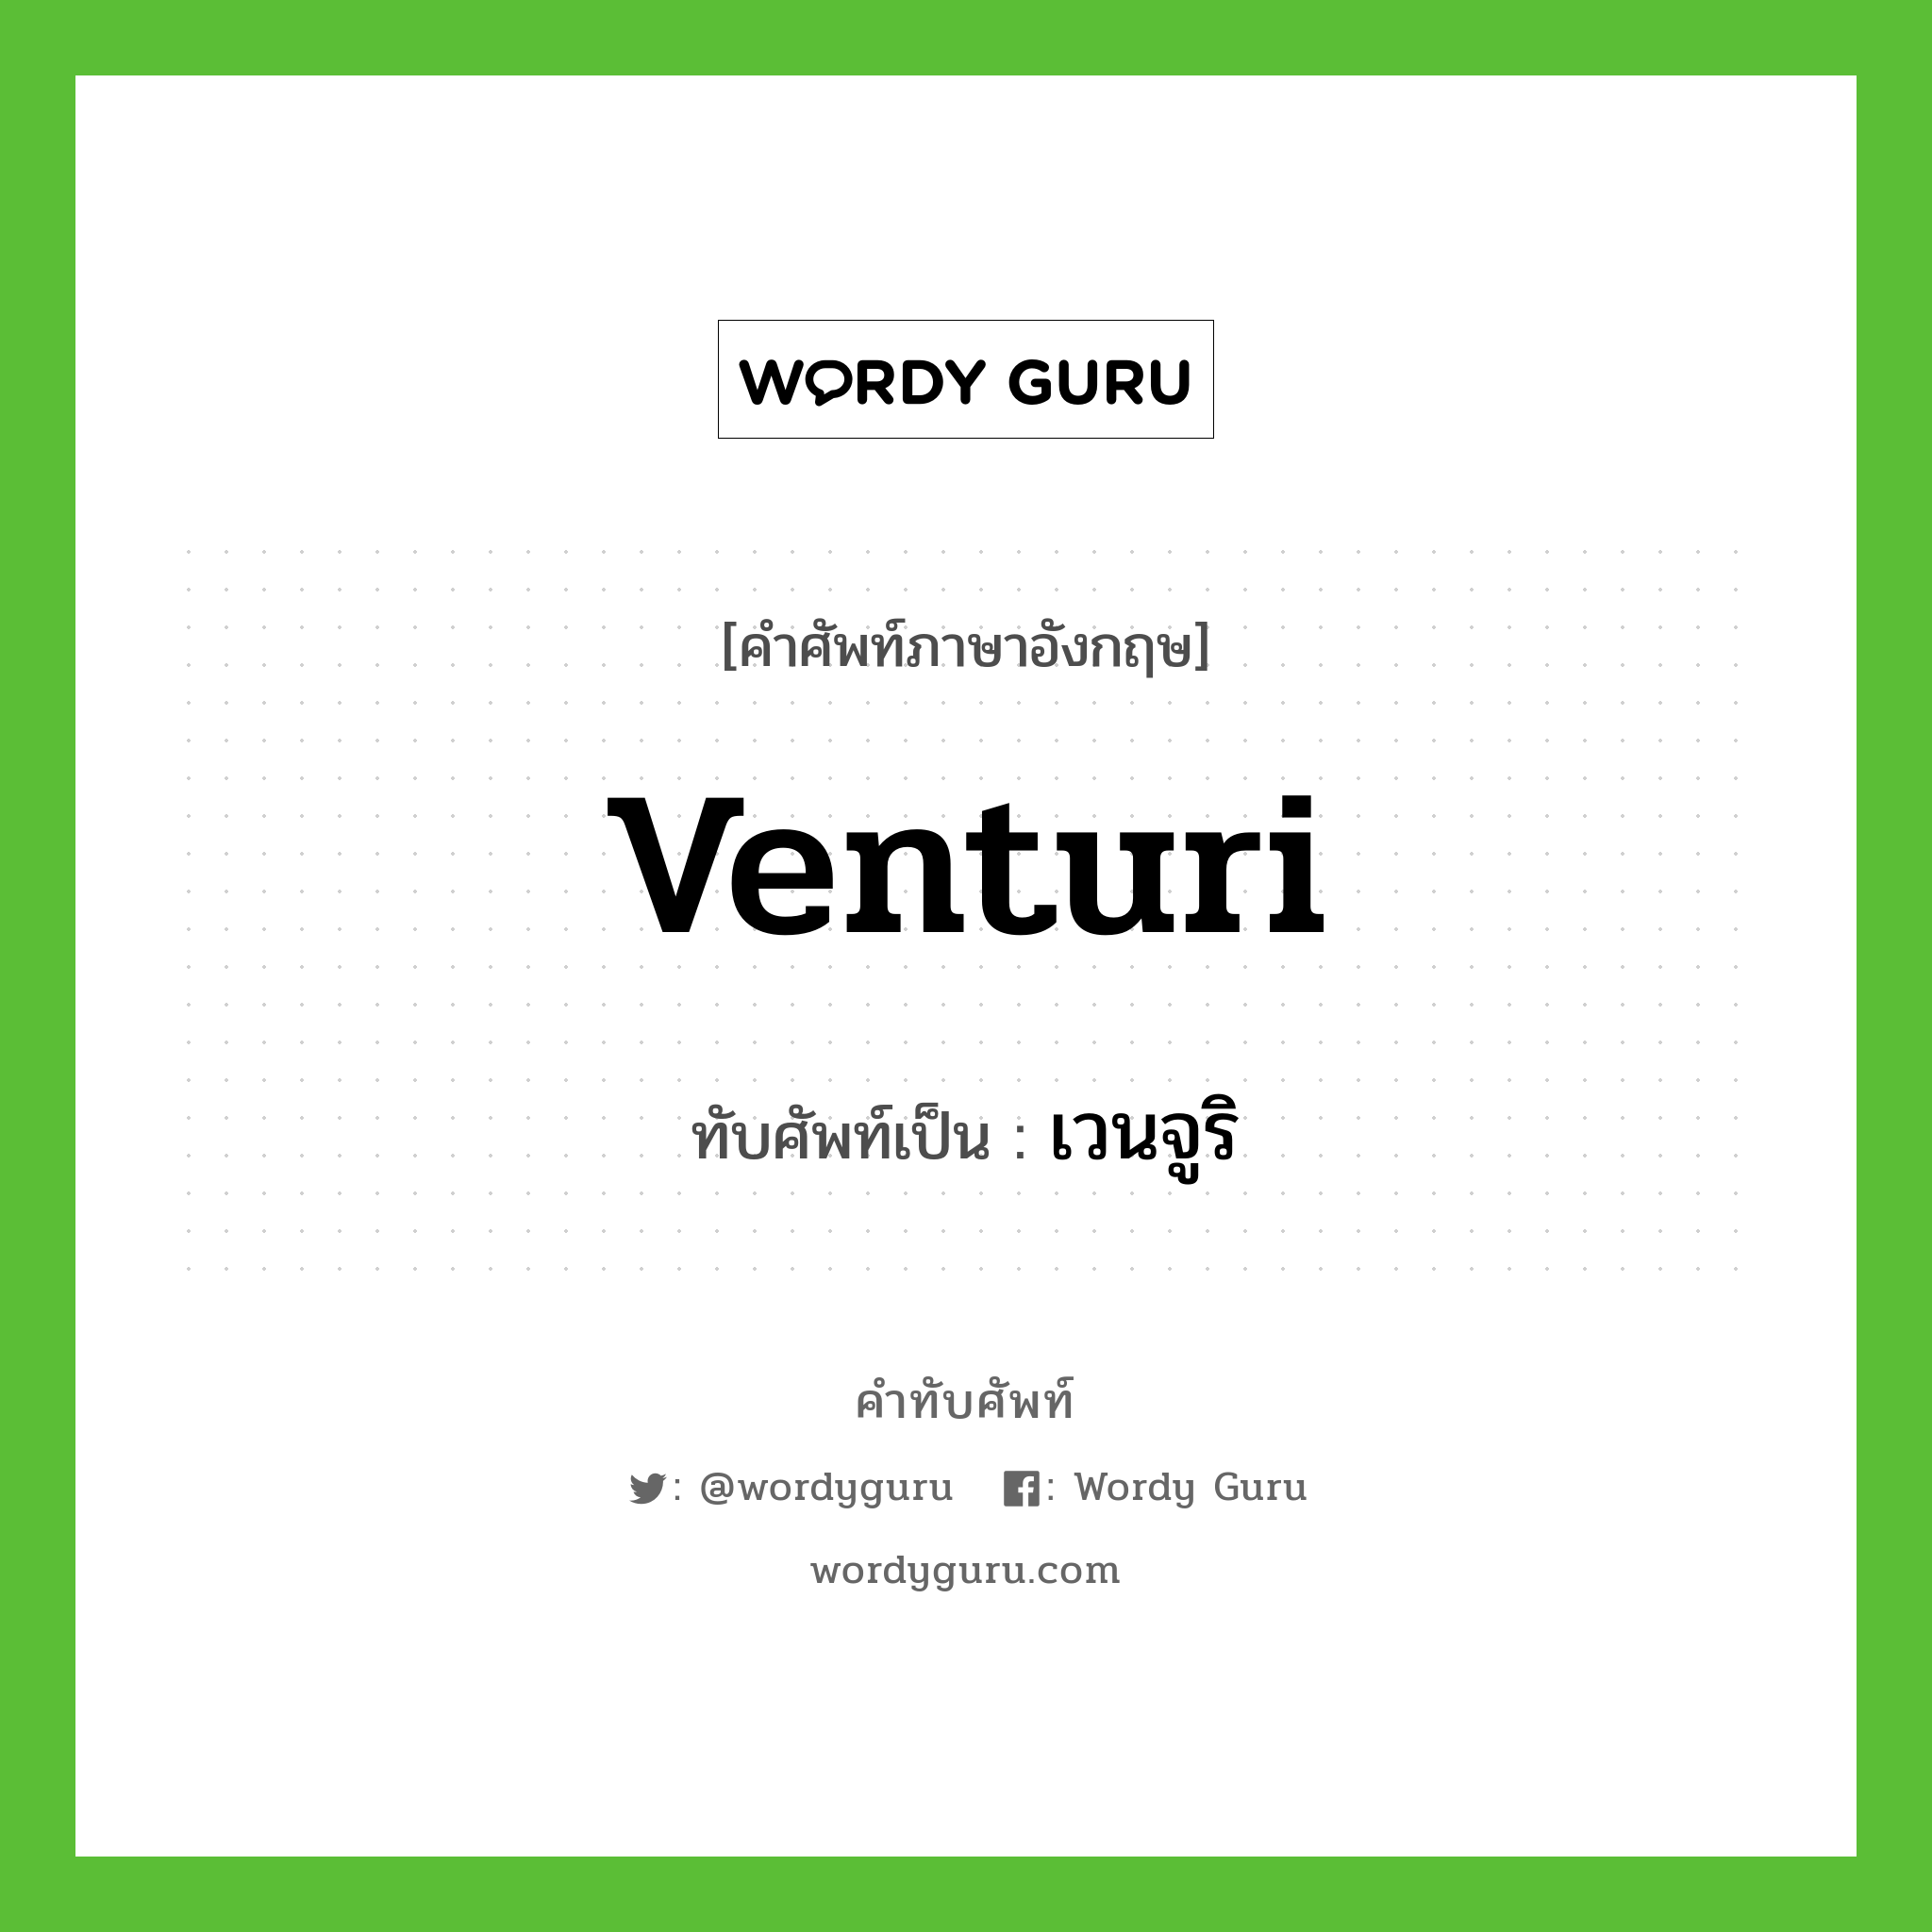 venturi เขียนเป็นคำไทยว่าอะไร?, คำศัพท์ภาษาอังกฤษ venturi ทับศัพท์เป็น เวนจูริ